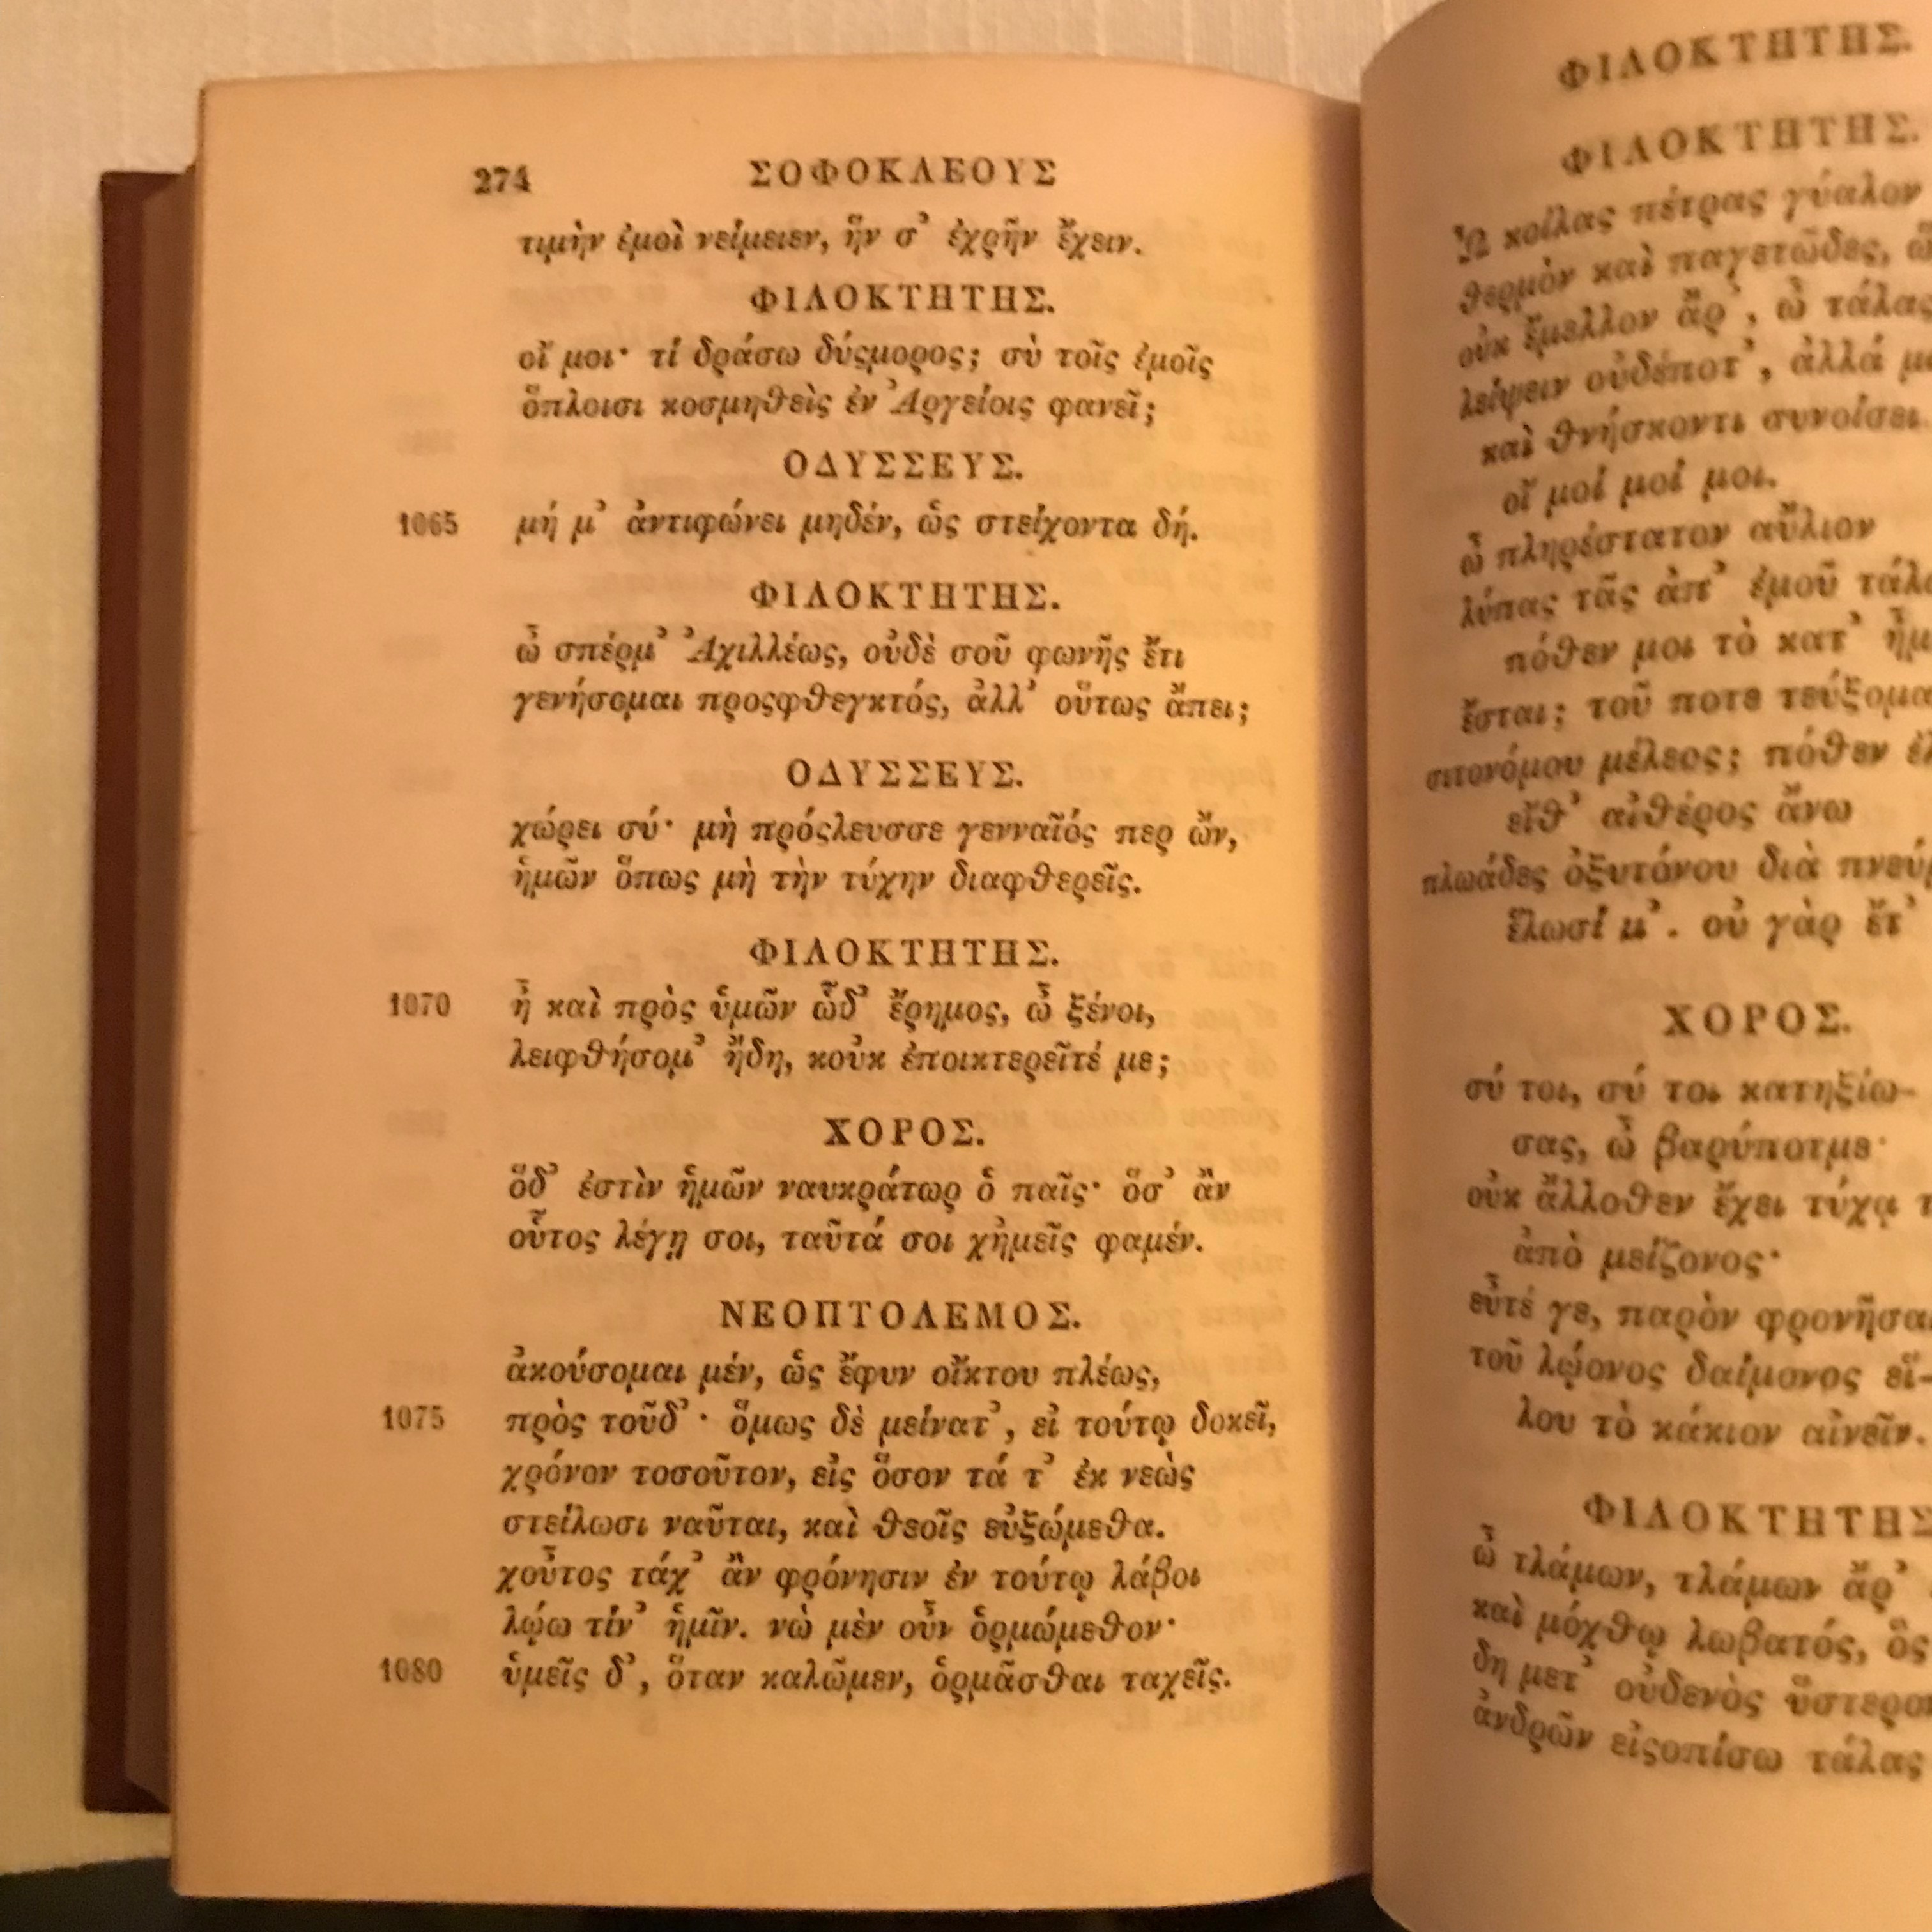 Klassisches Schriftbild: Textbeispiel aus Sophokles' Spätwerk "Philoktetes" in der altgriechischen Ausgabe von 1841.